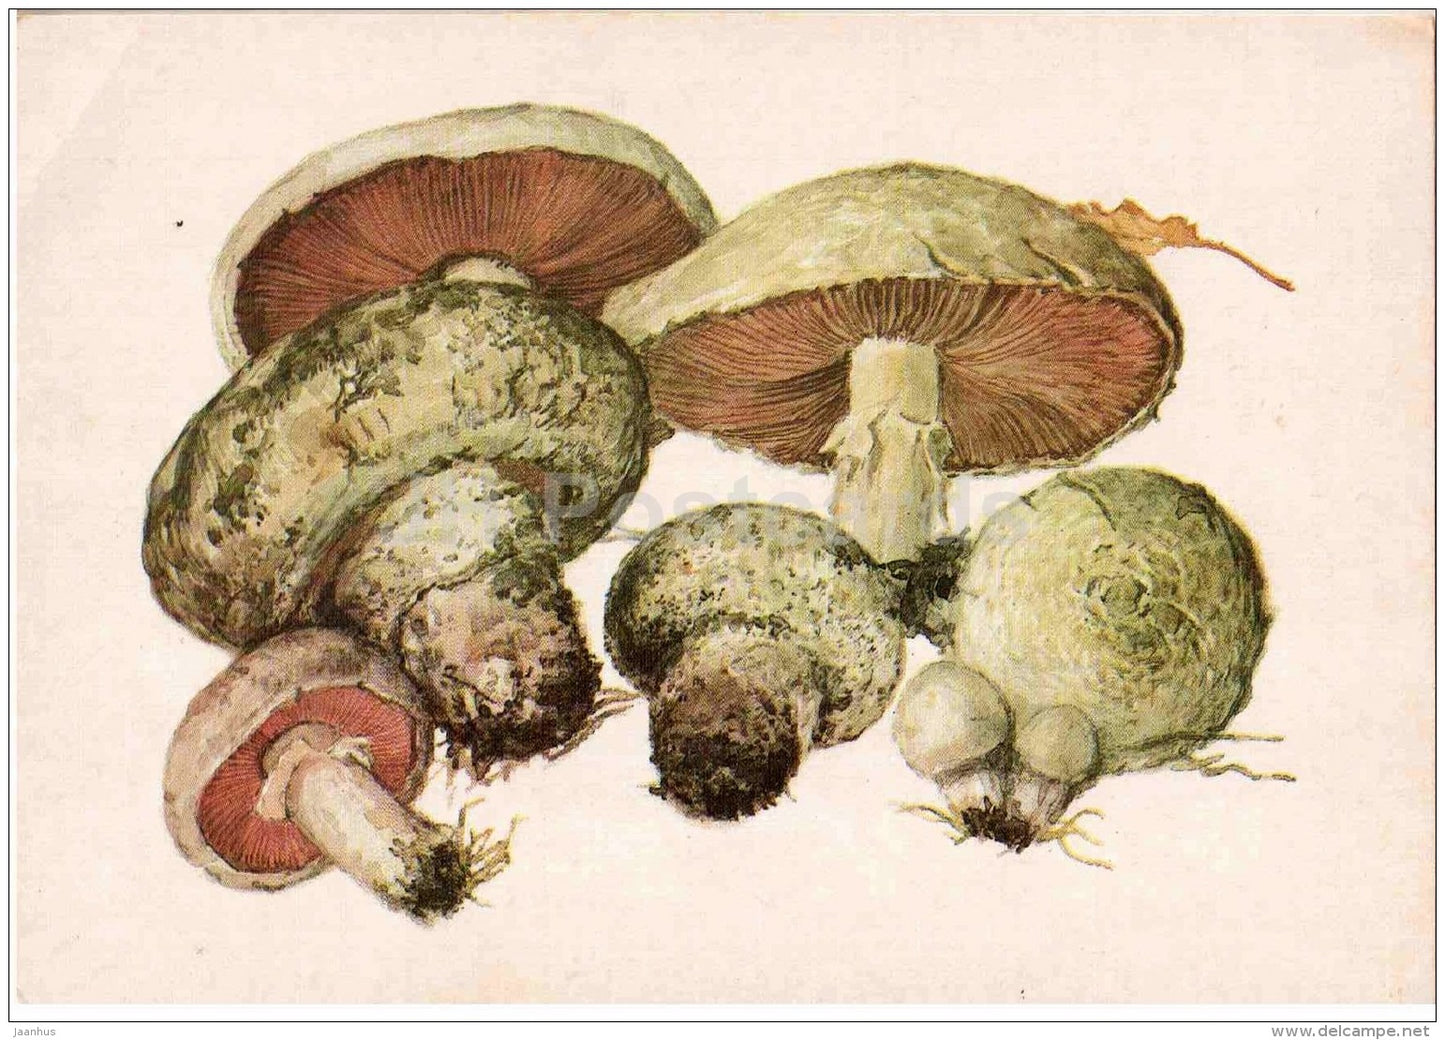 Agaricus campestris - Field Mushroom - mushroom - 1986 - Russia USSR - unused - JH Postcards